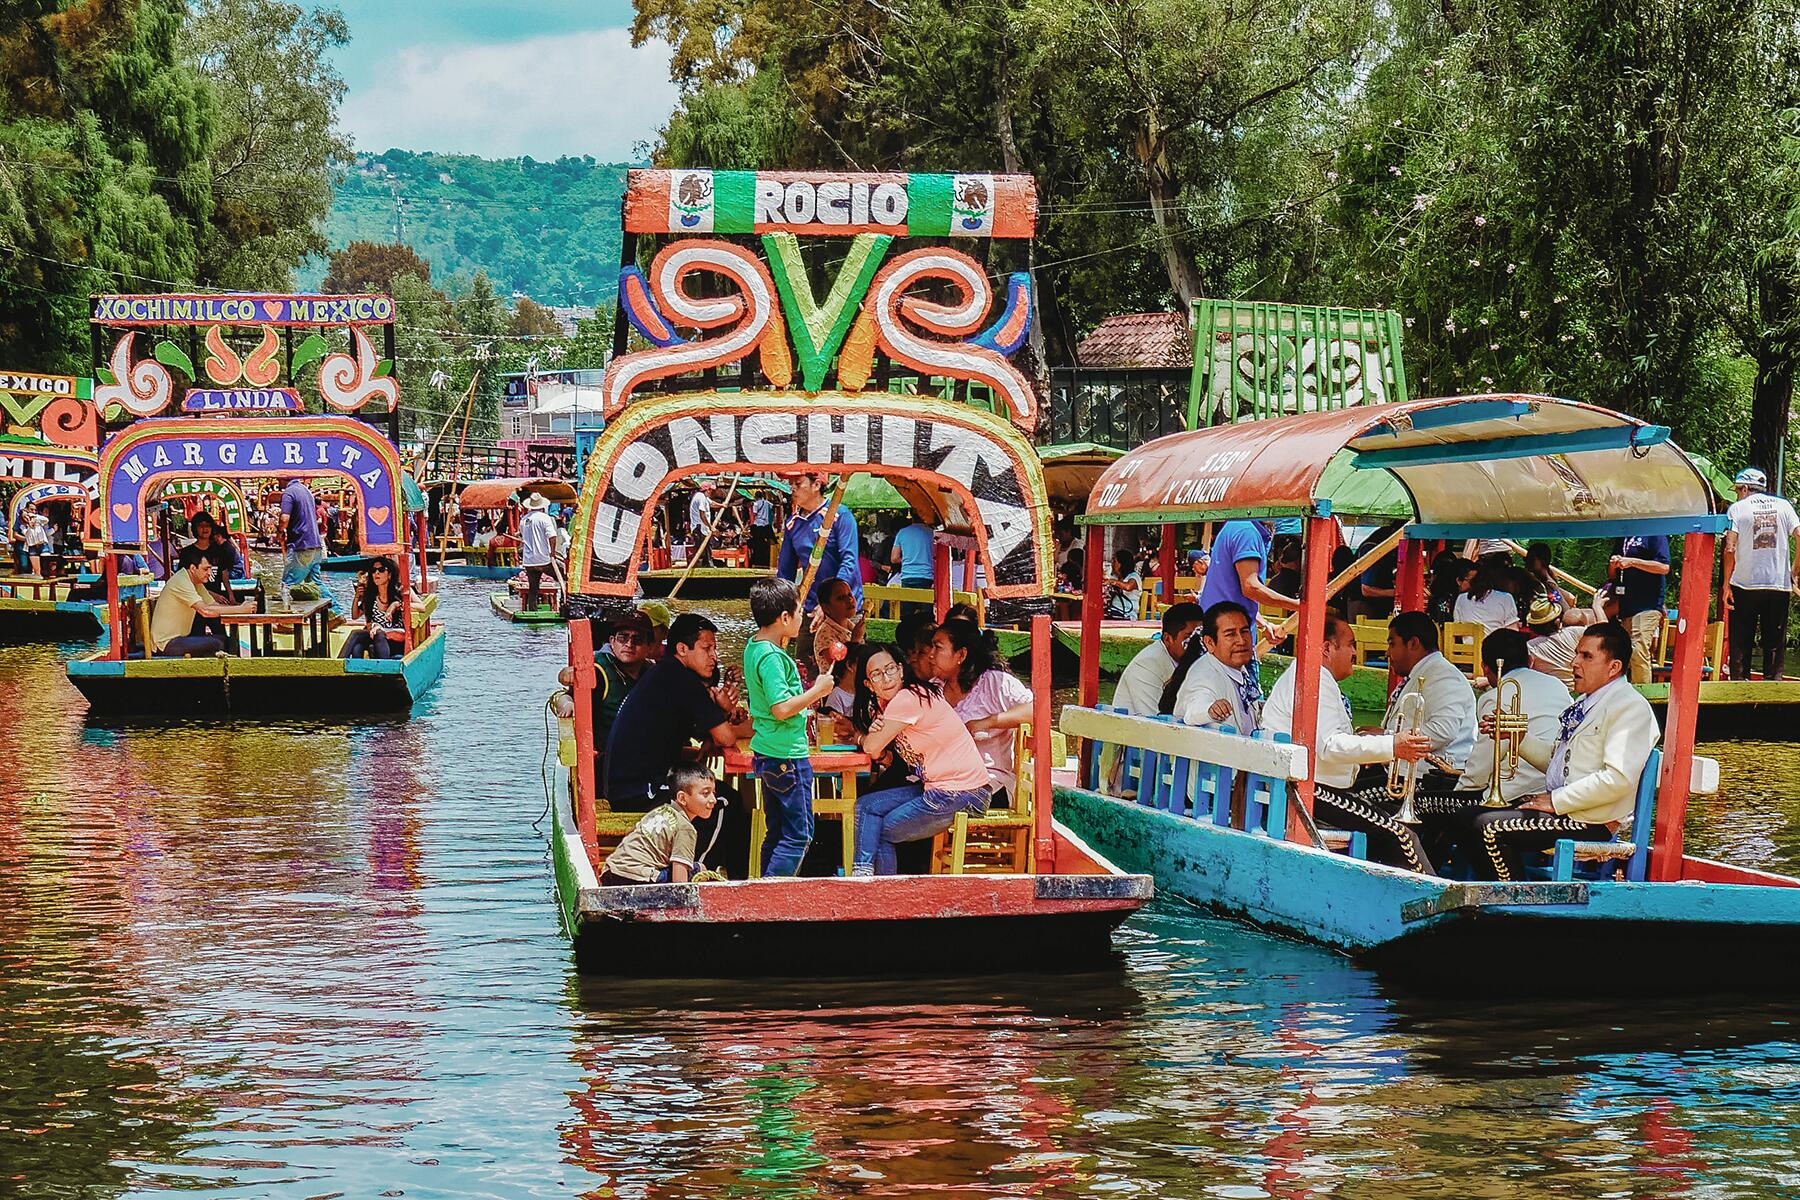 xochimilco tourist trap